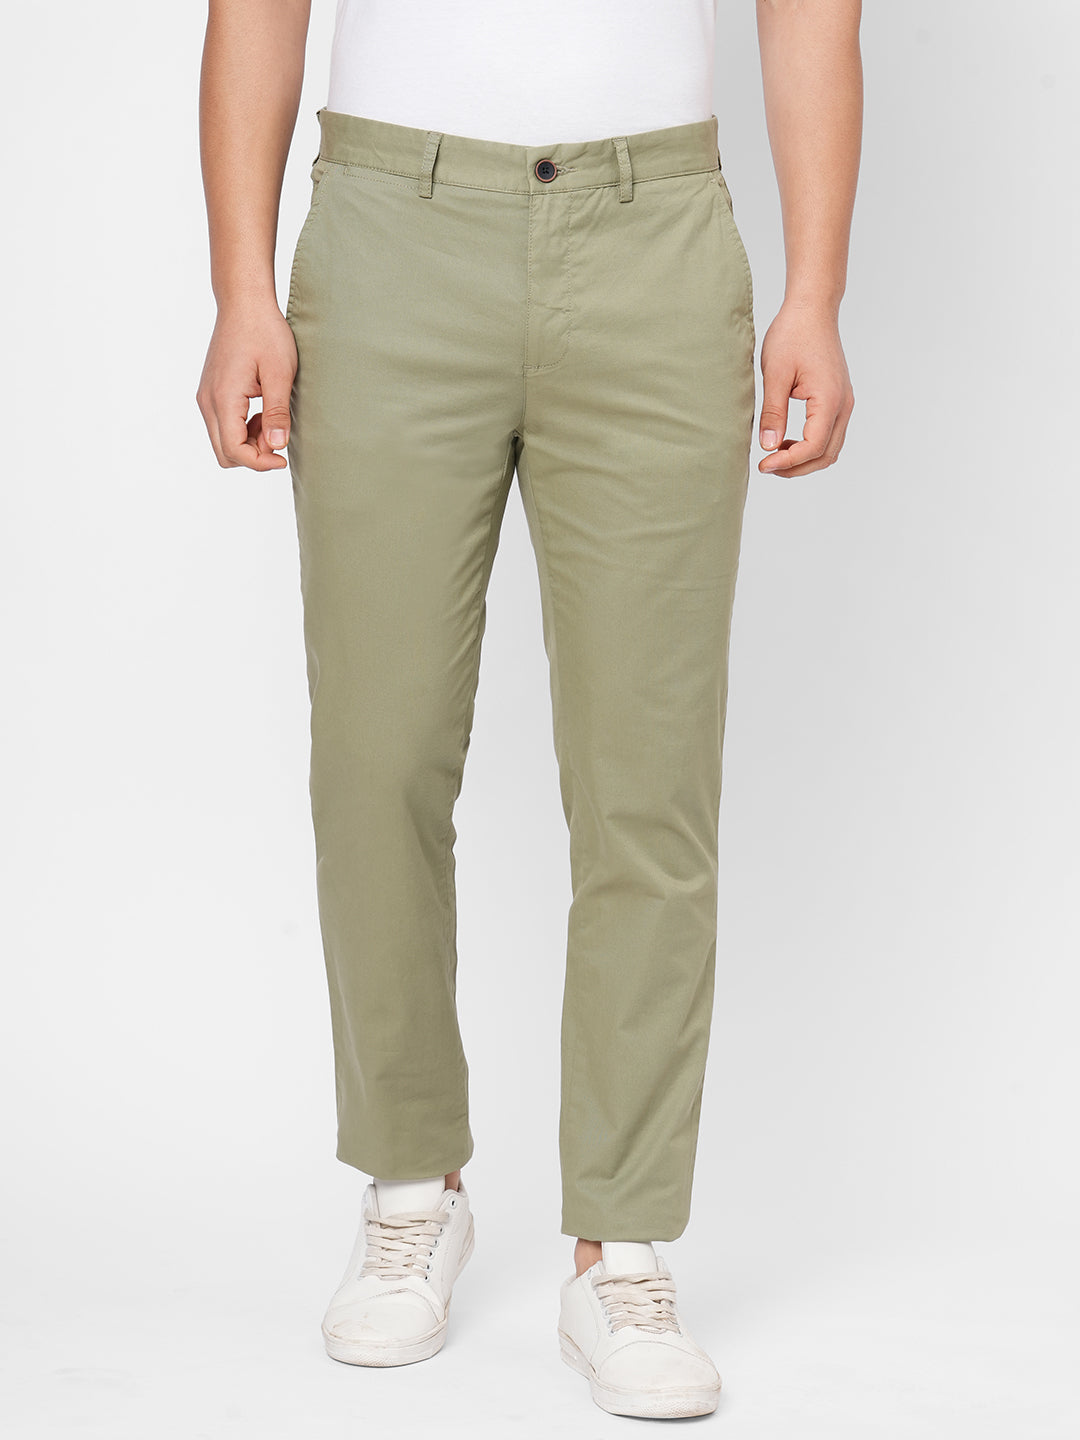 cotton world-men-s-pants-men-s-cotton-lycra-Beige Color-slim-fit-pants